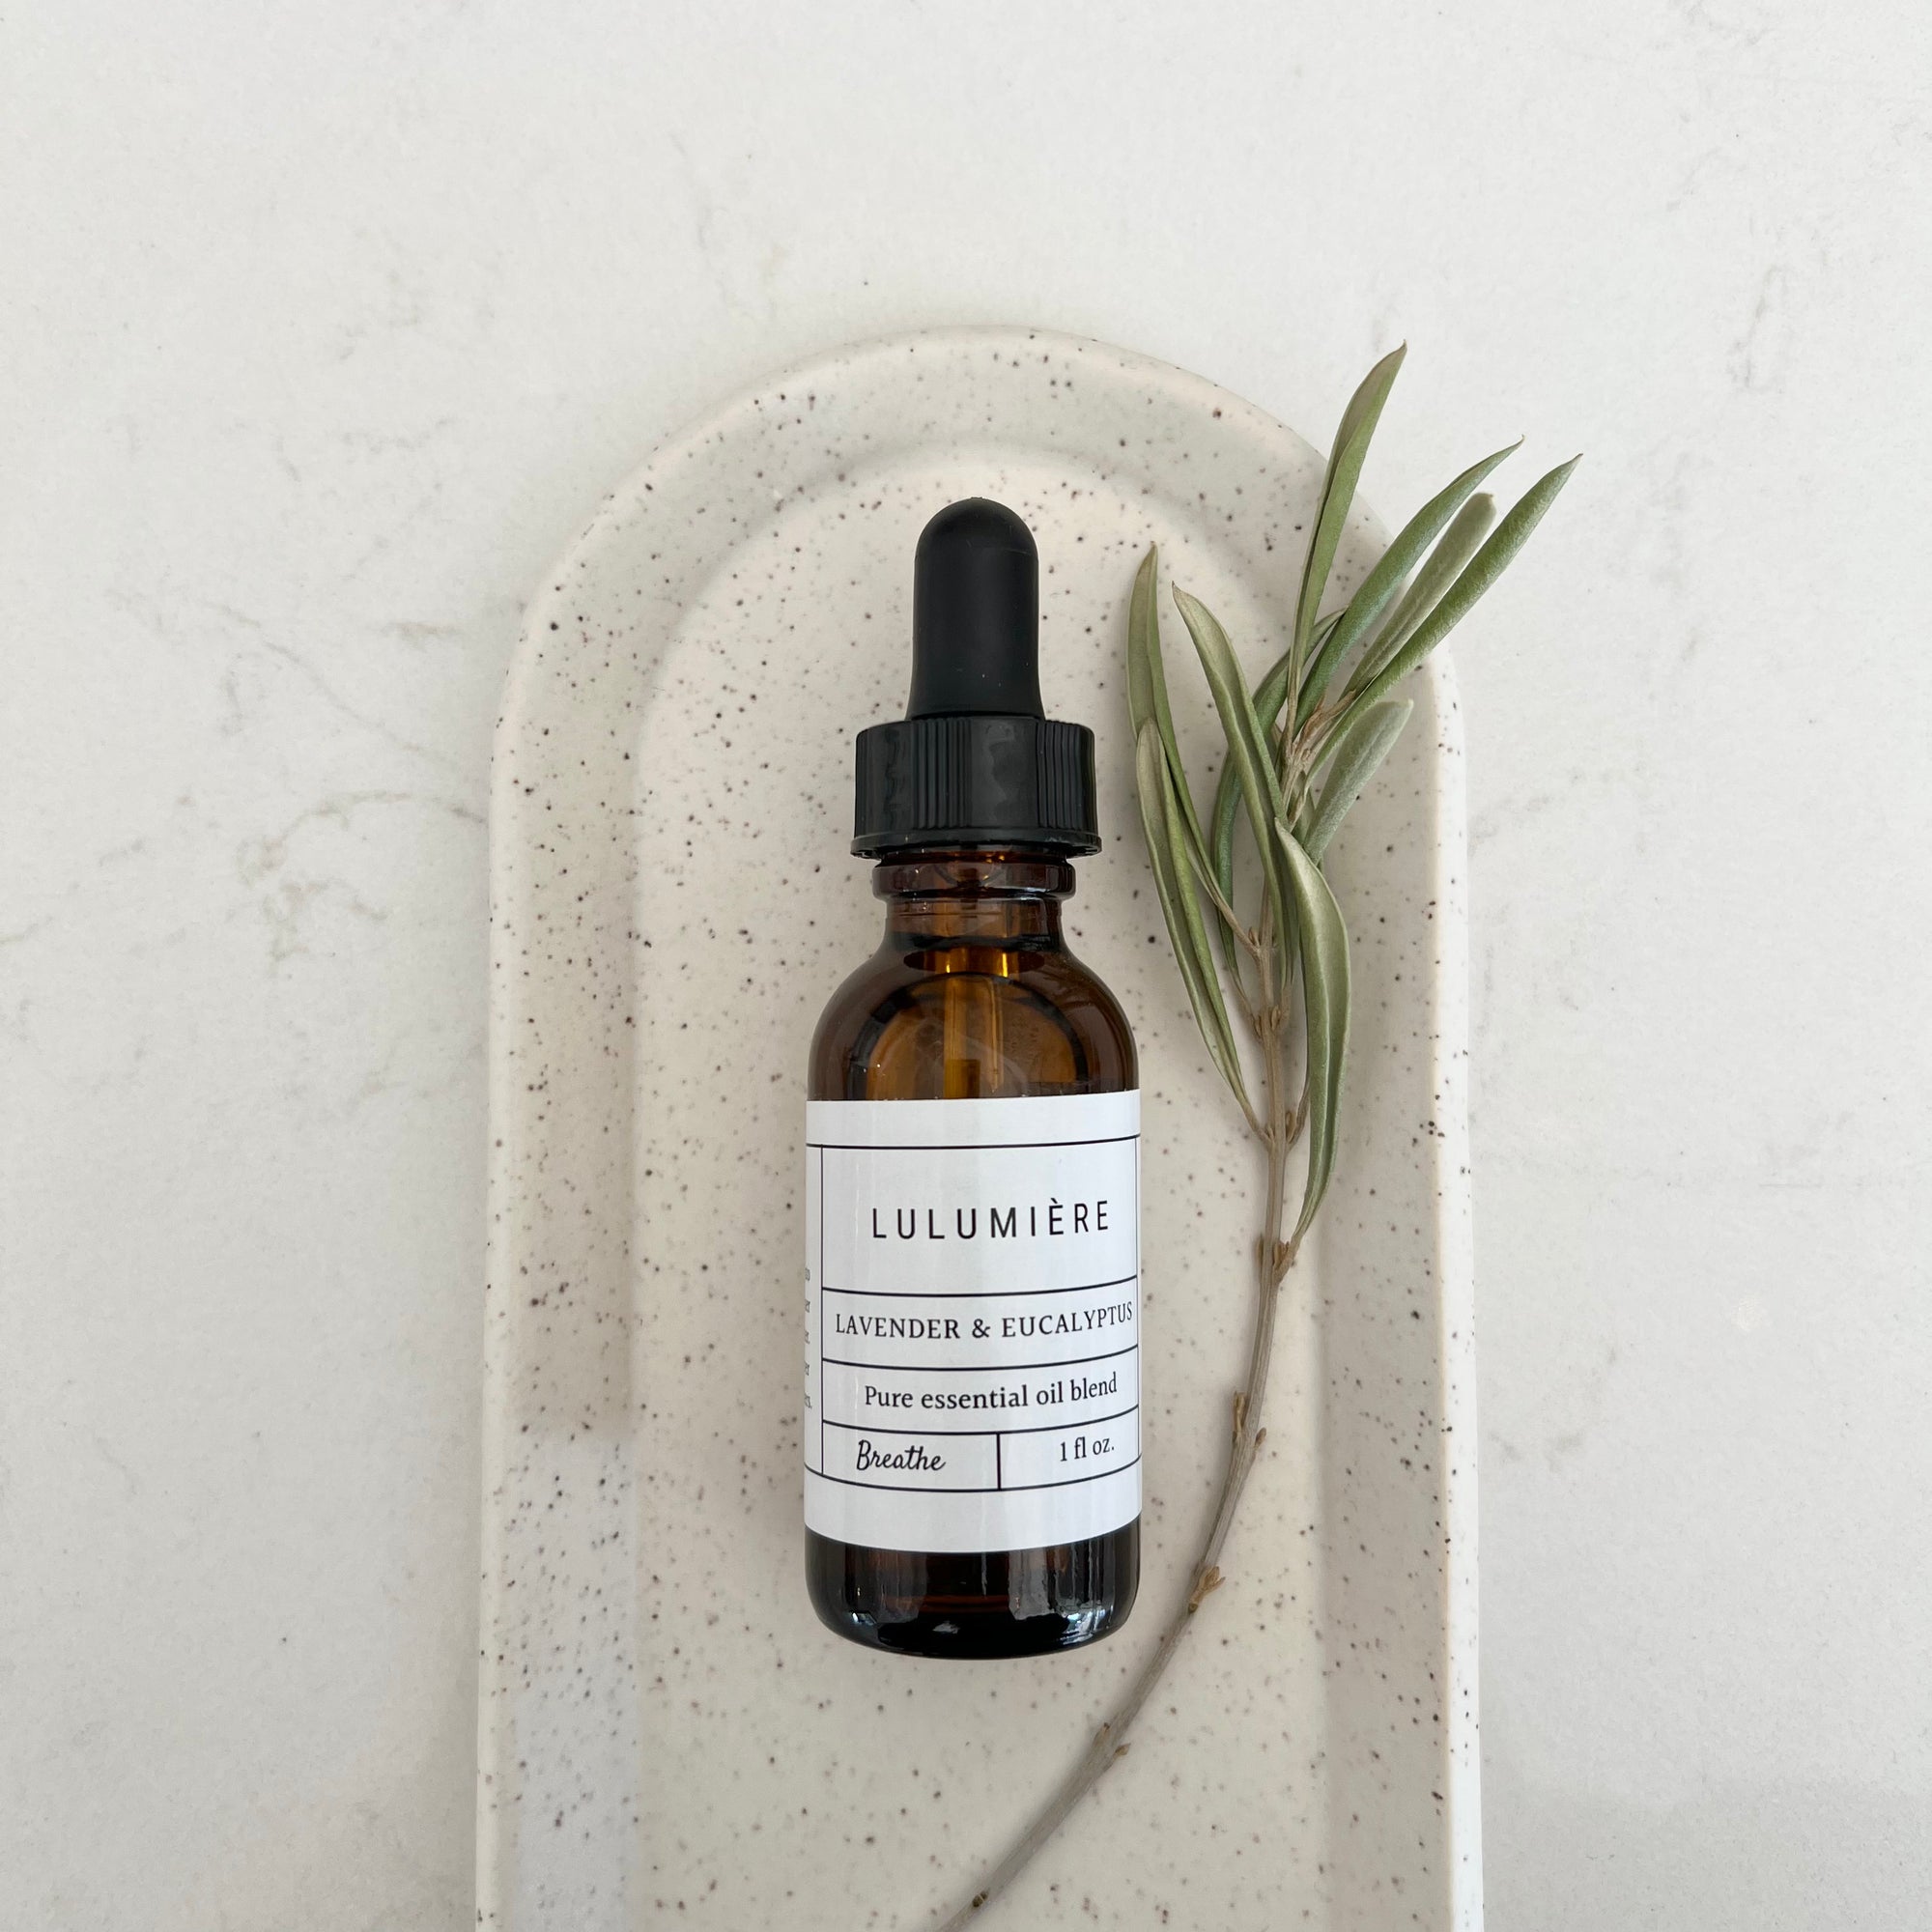 Lulumiere Lavender & Eucalyptus Essential Oil Blend